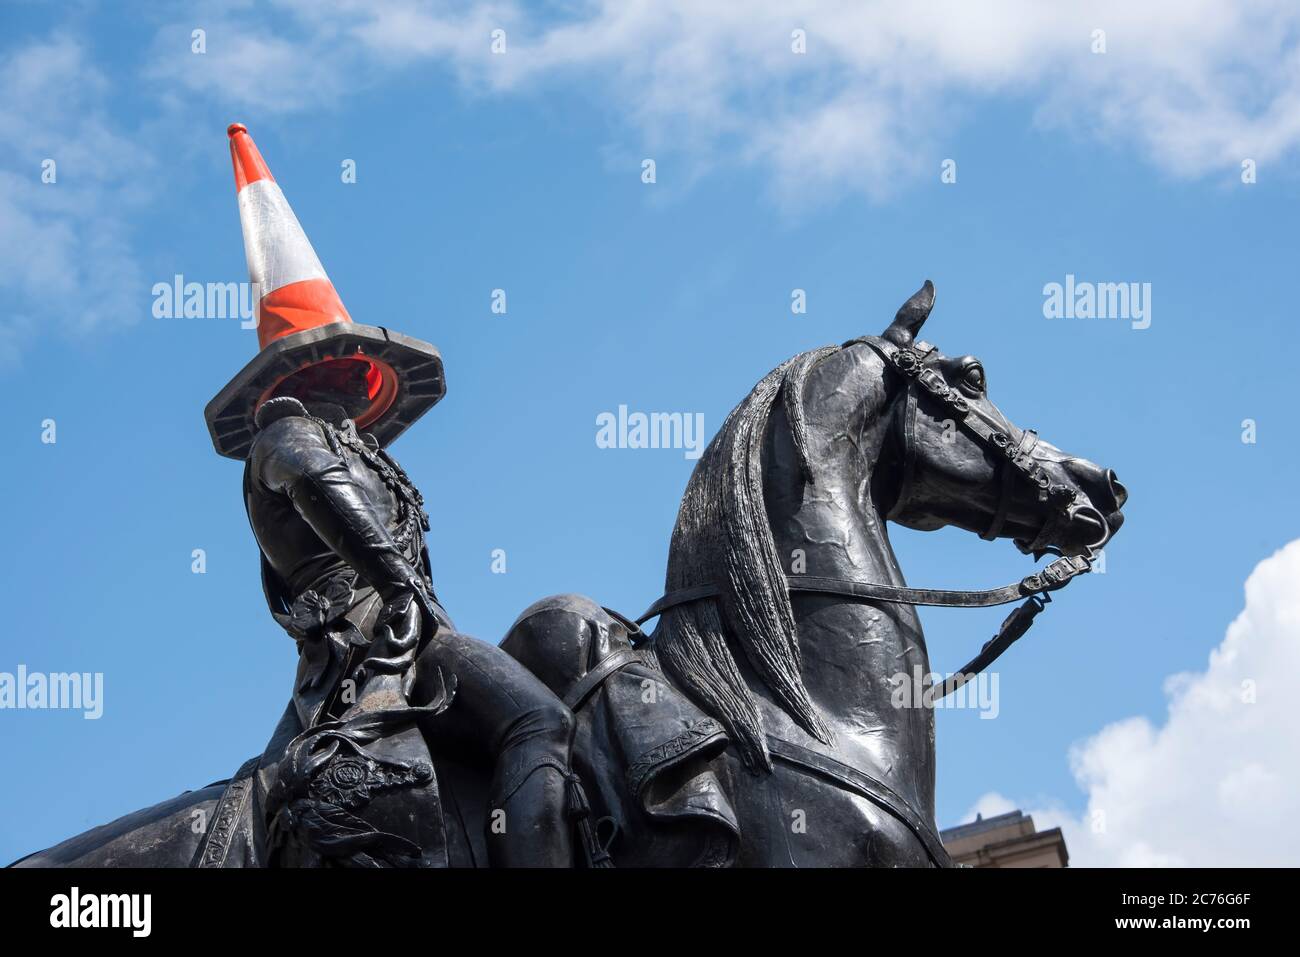 Statue équestre du duc de Wellington ornée d'un cône de circulation, Glasgow, Écosse Banque D'Images